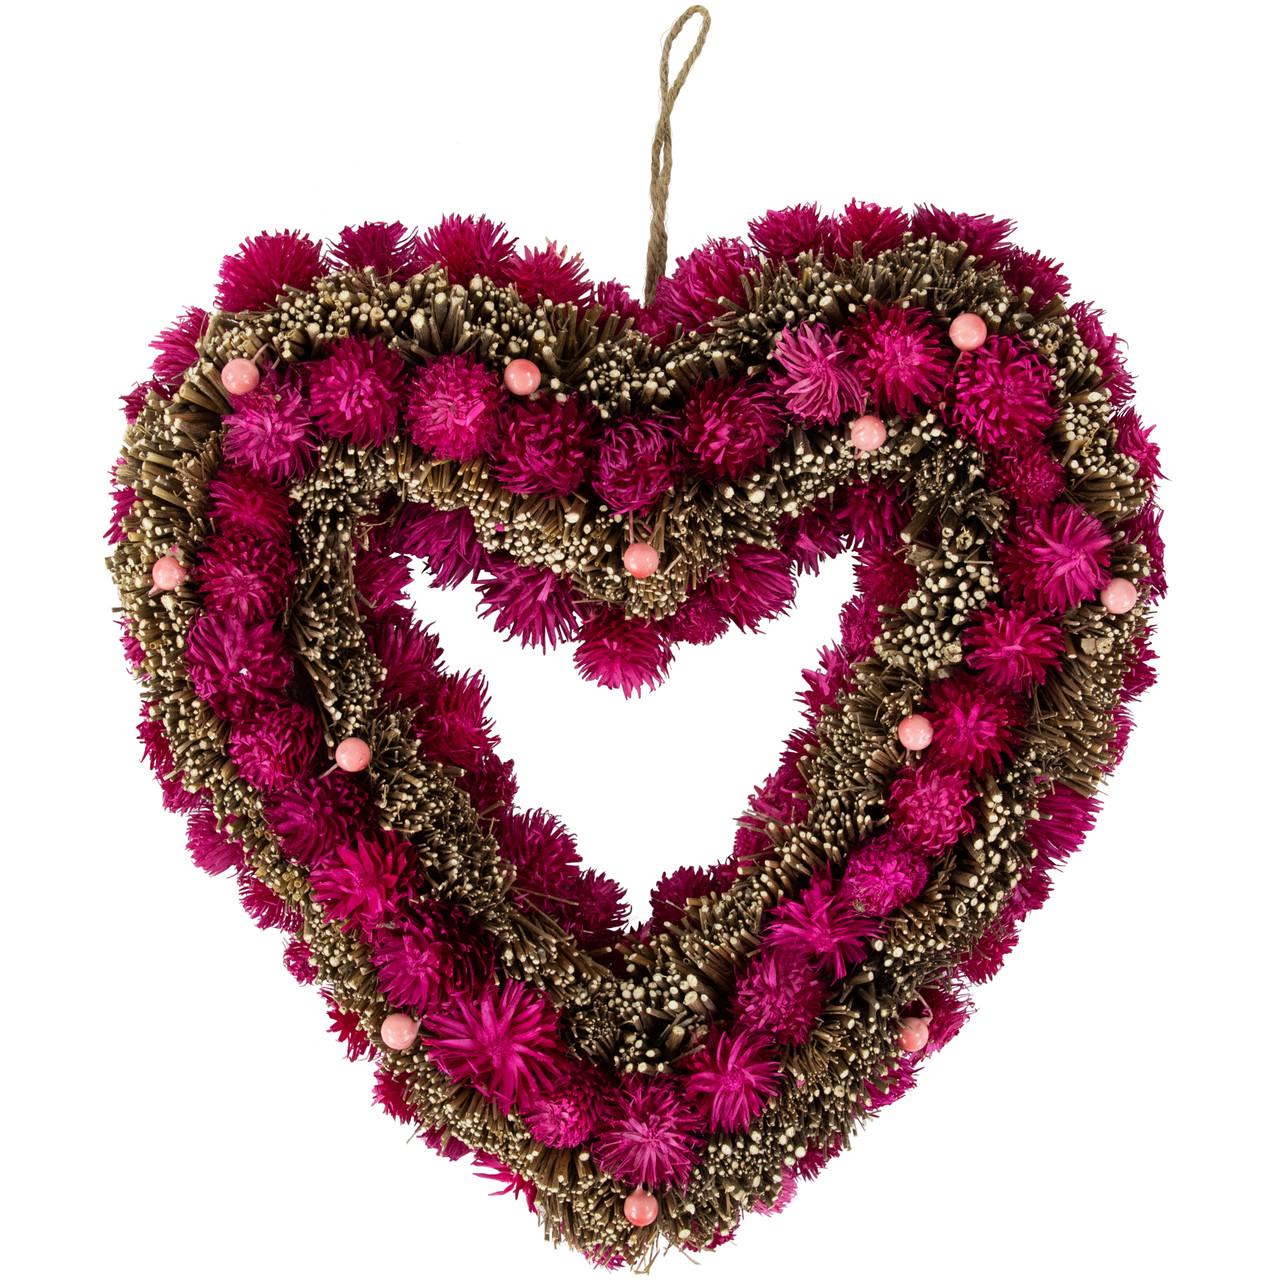 Valentine Wreath Decoration Red Tinsel Heart Wreath Artificial Heart Shaped Wreath Valentine Hanging Door Wreath for Valentines' Day Wedding